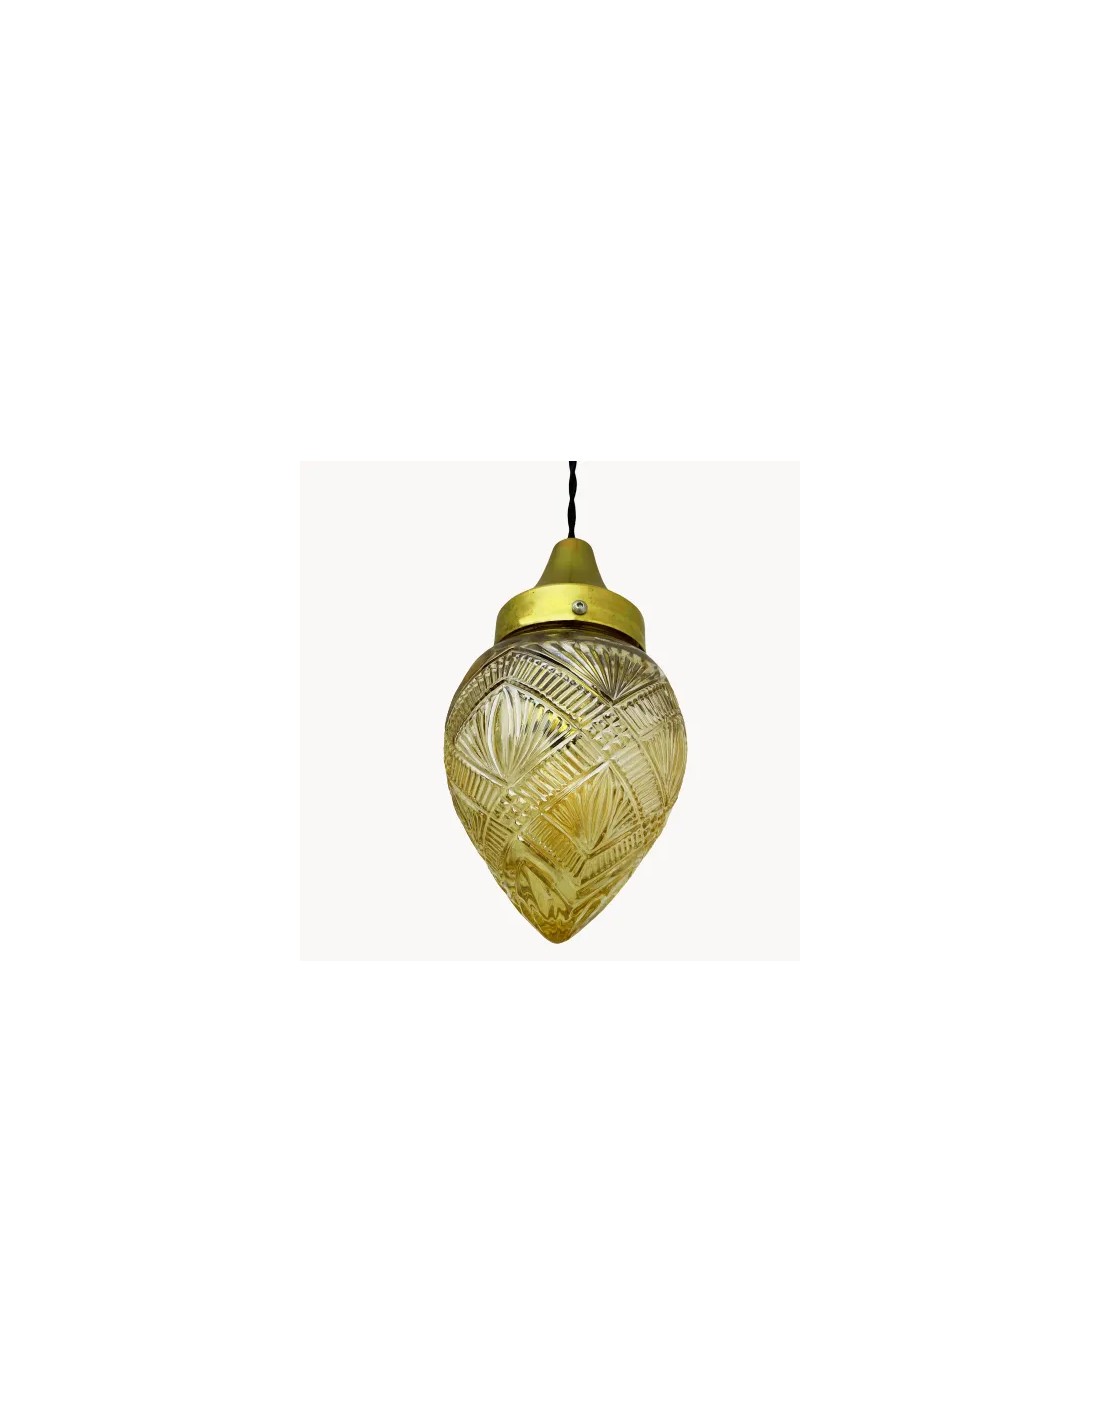 lámpara de techo luz vintage con tulipa de cristal con decoraciones ornamentales